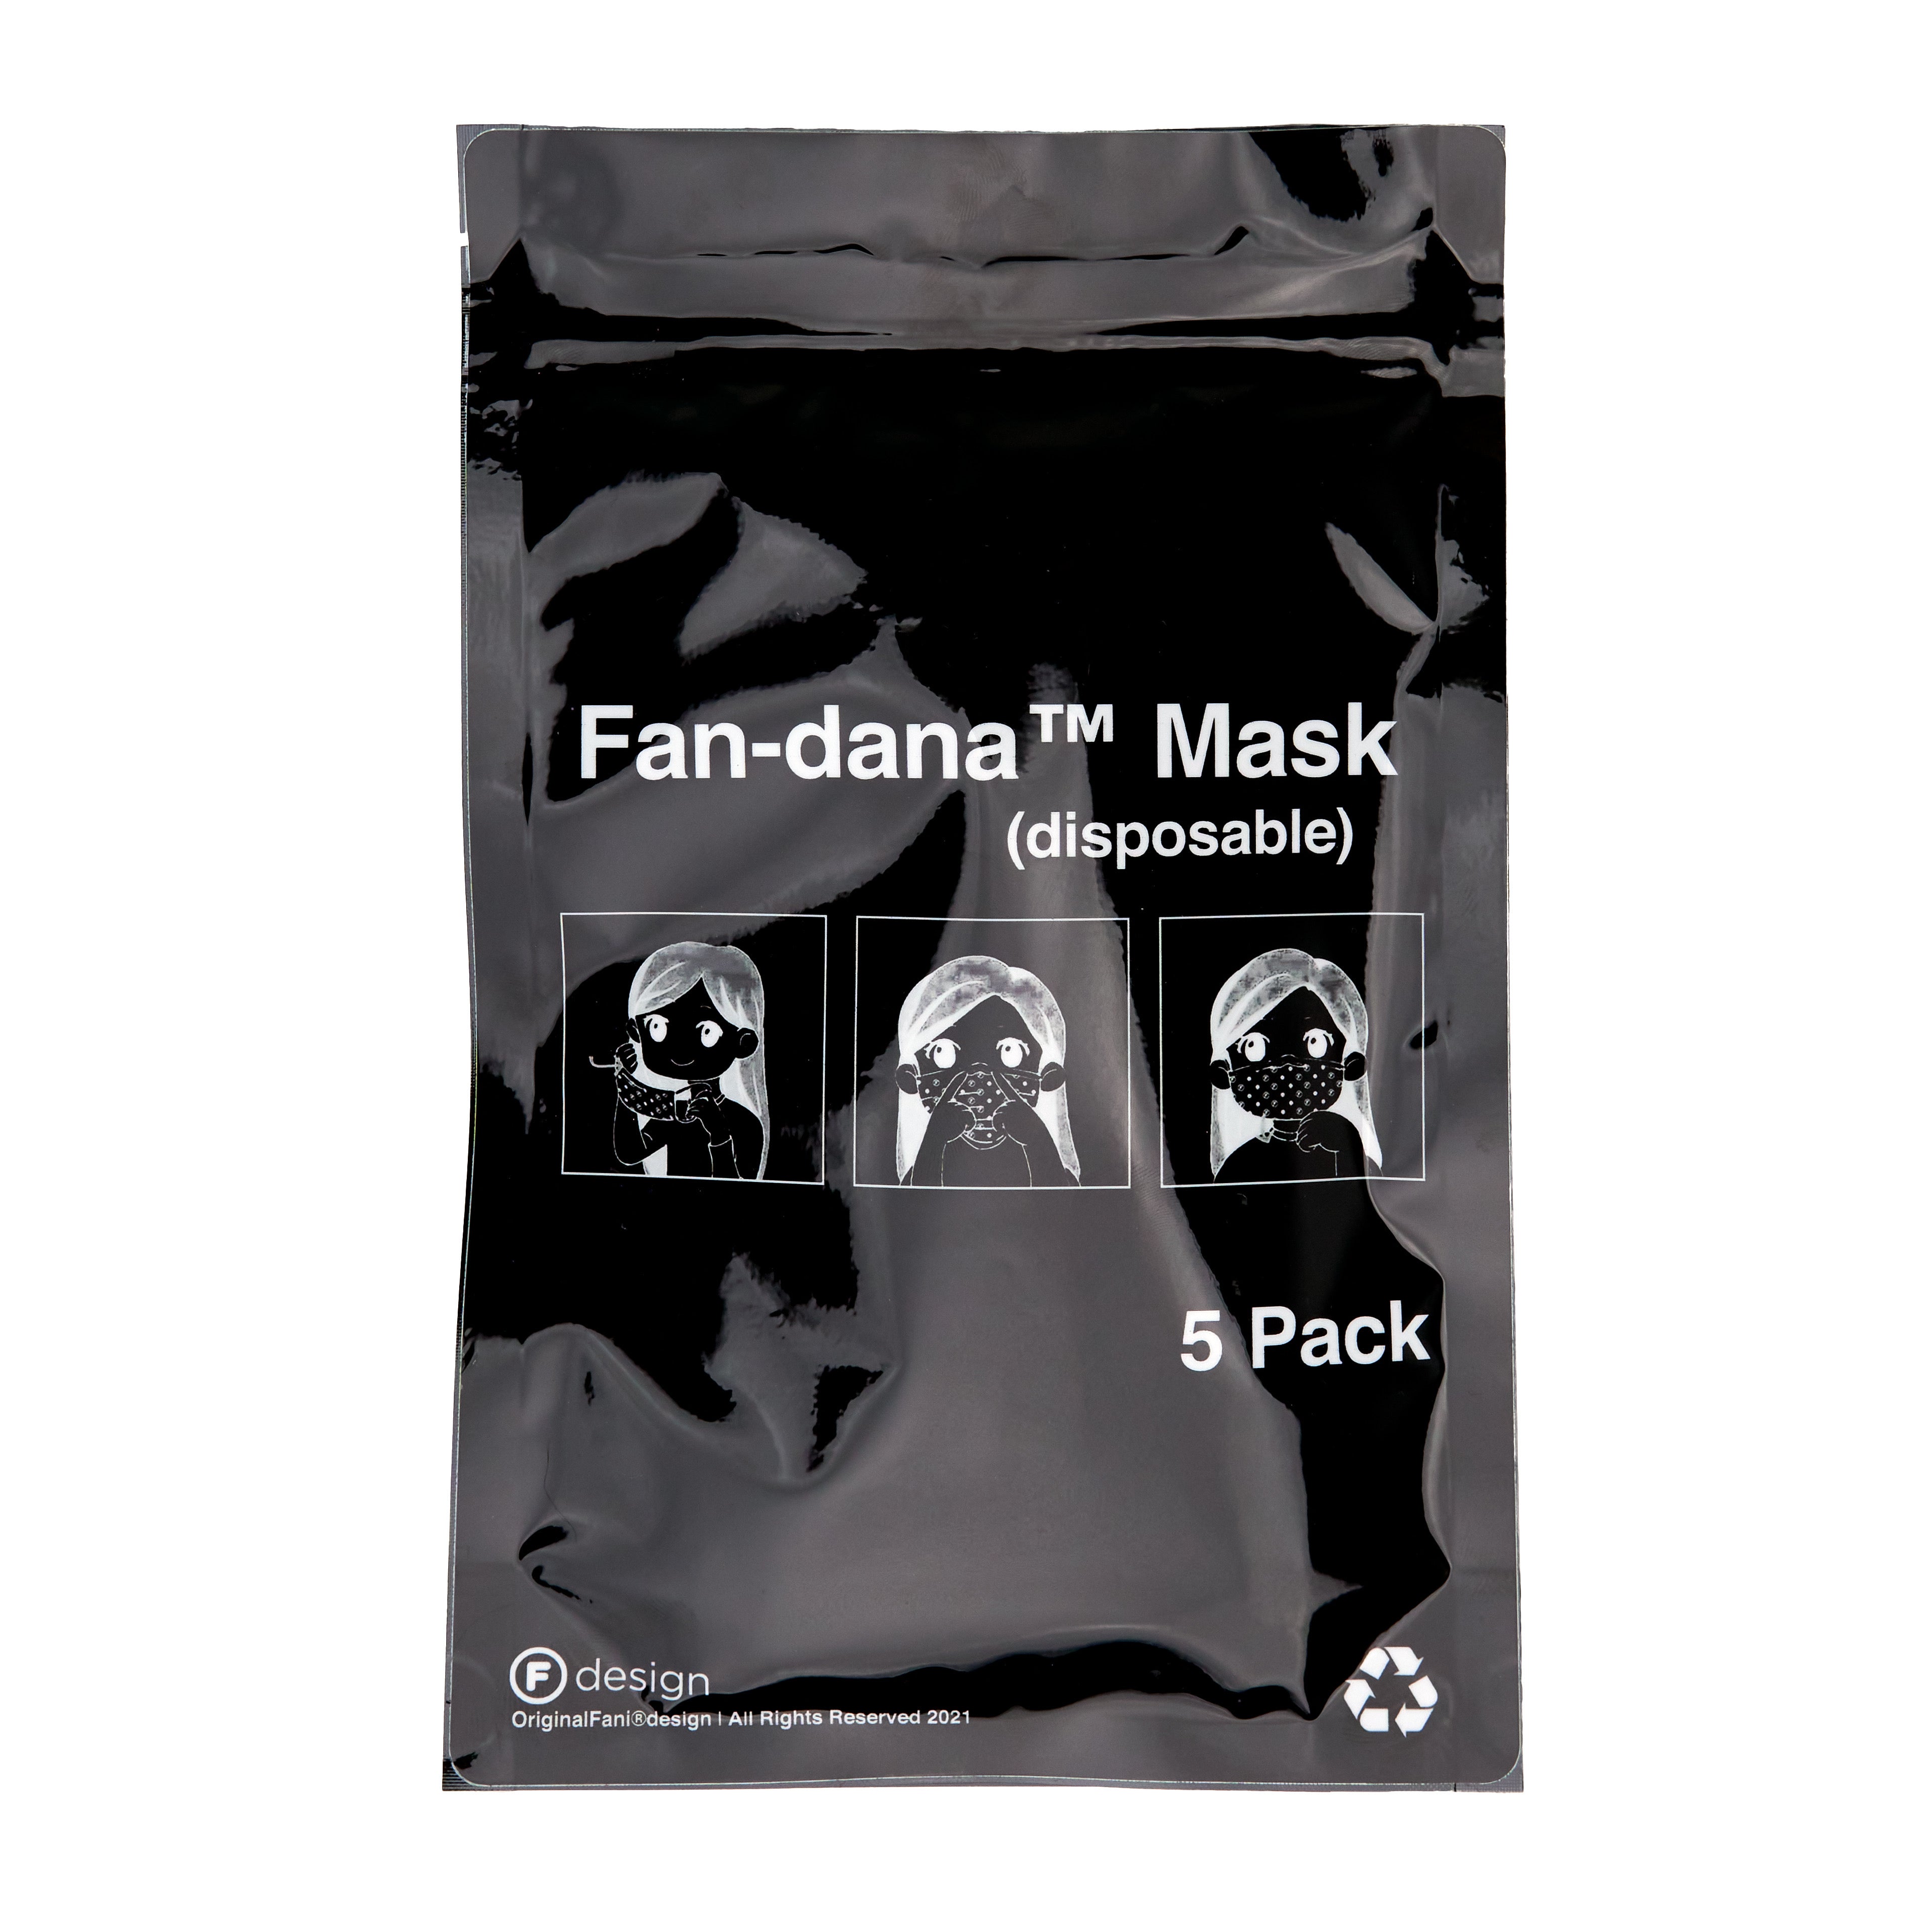 OriginalFani®design Fan-dana™️ Mask (disposable) 5 pack (Black)